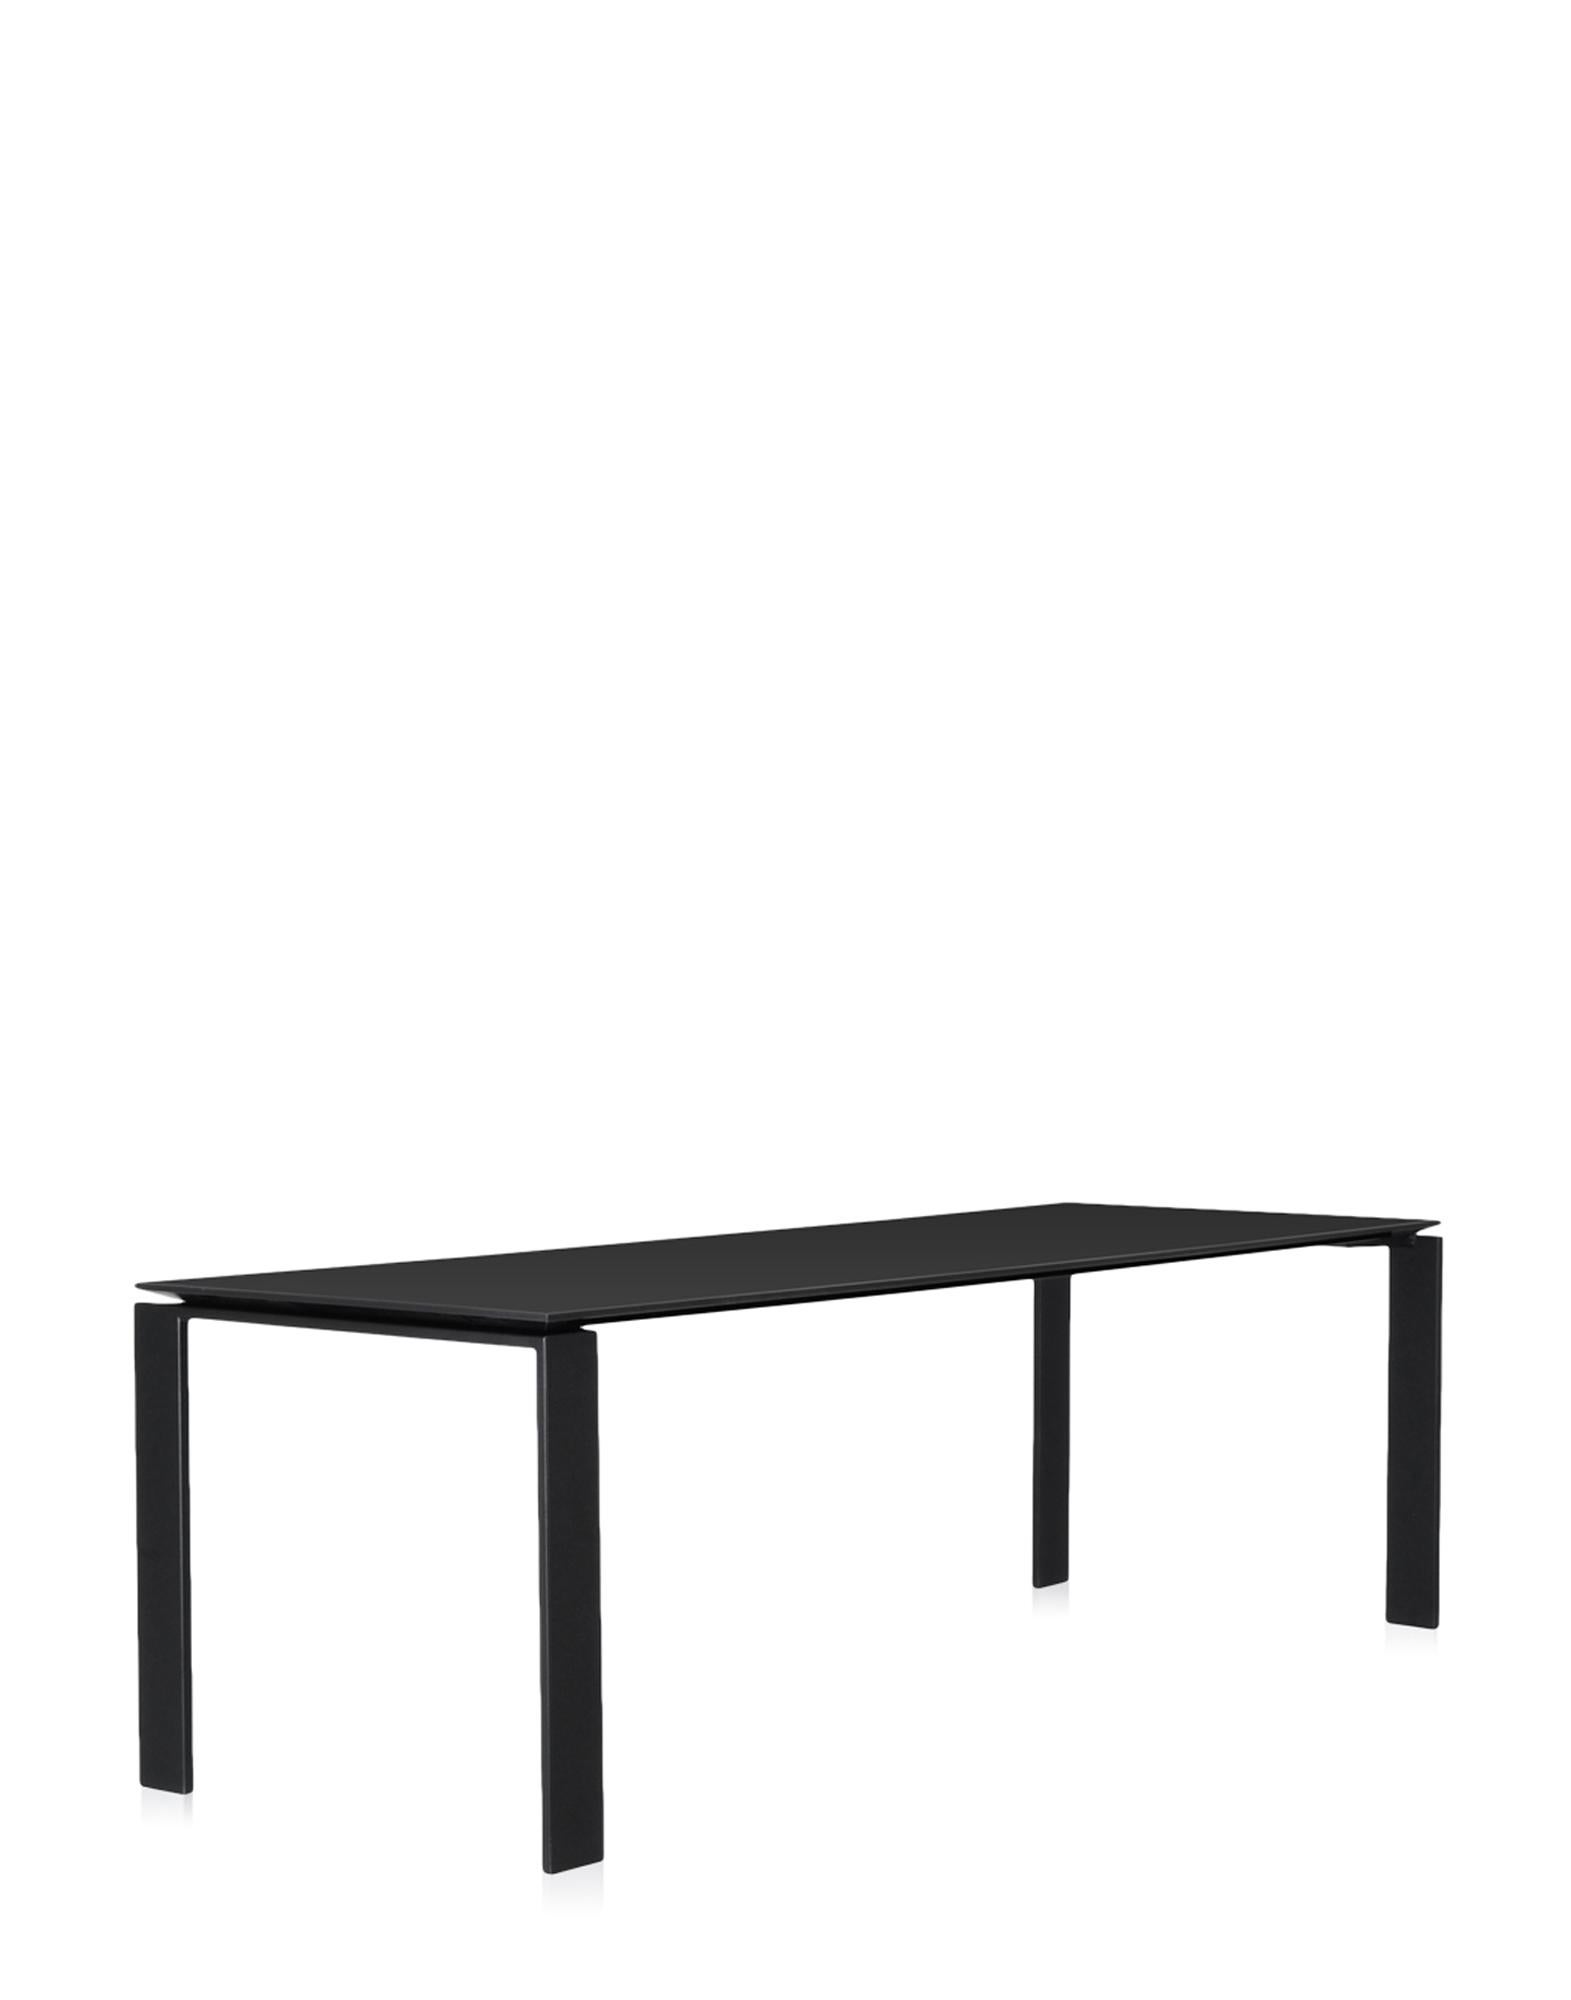 Cette table fonctionnelle et raffinée présente également un design géométrique strict. Grâce à l'élégante solution de design, la position du plateau mince de la table permet de placer facilement des tiroirs ou des meubles de rangement pour le